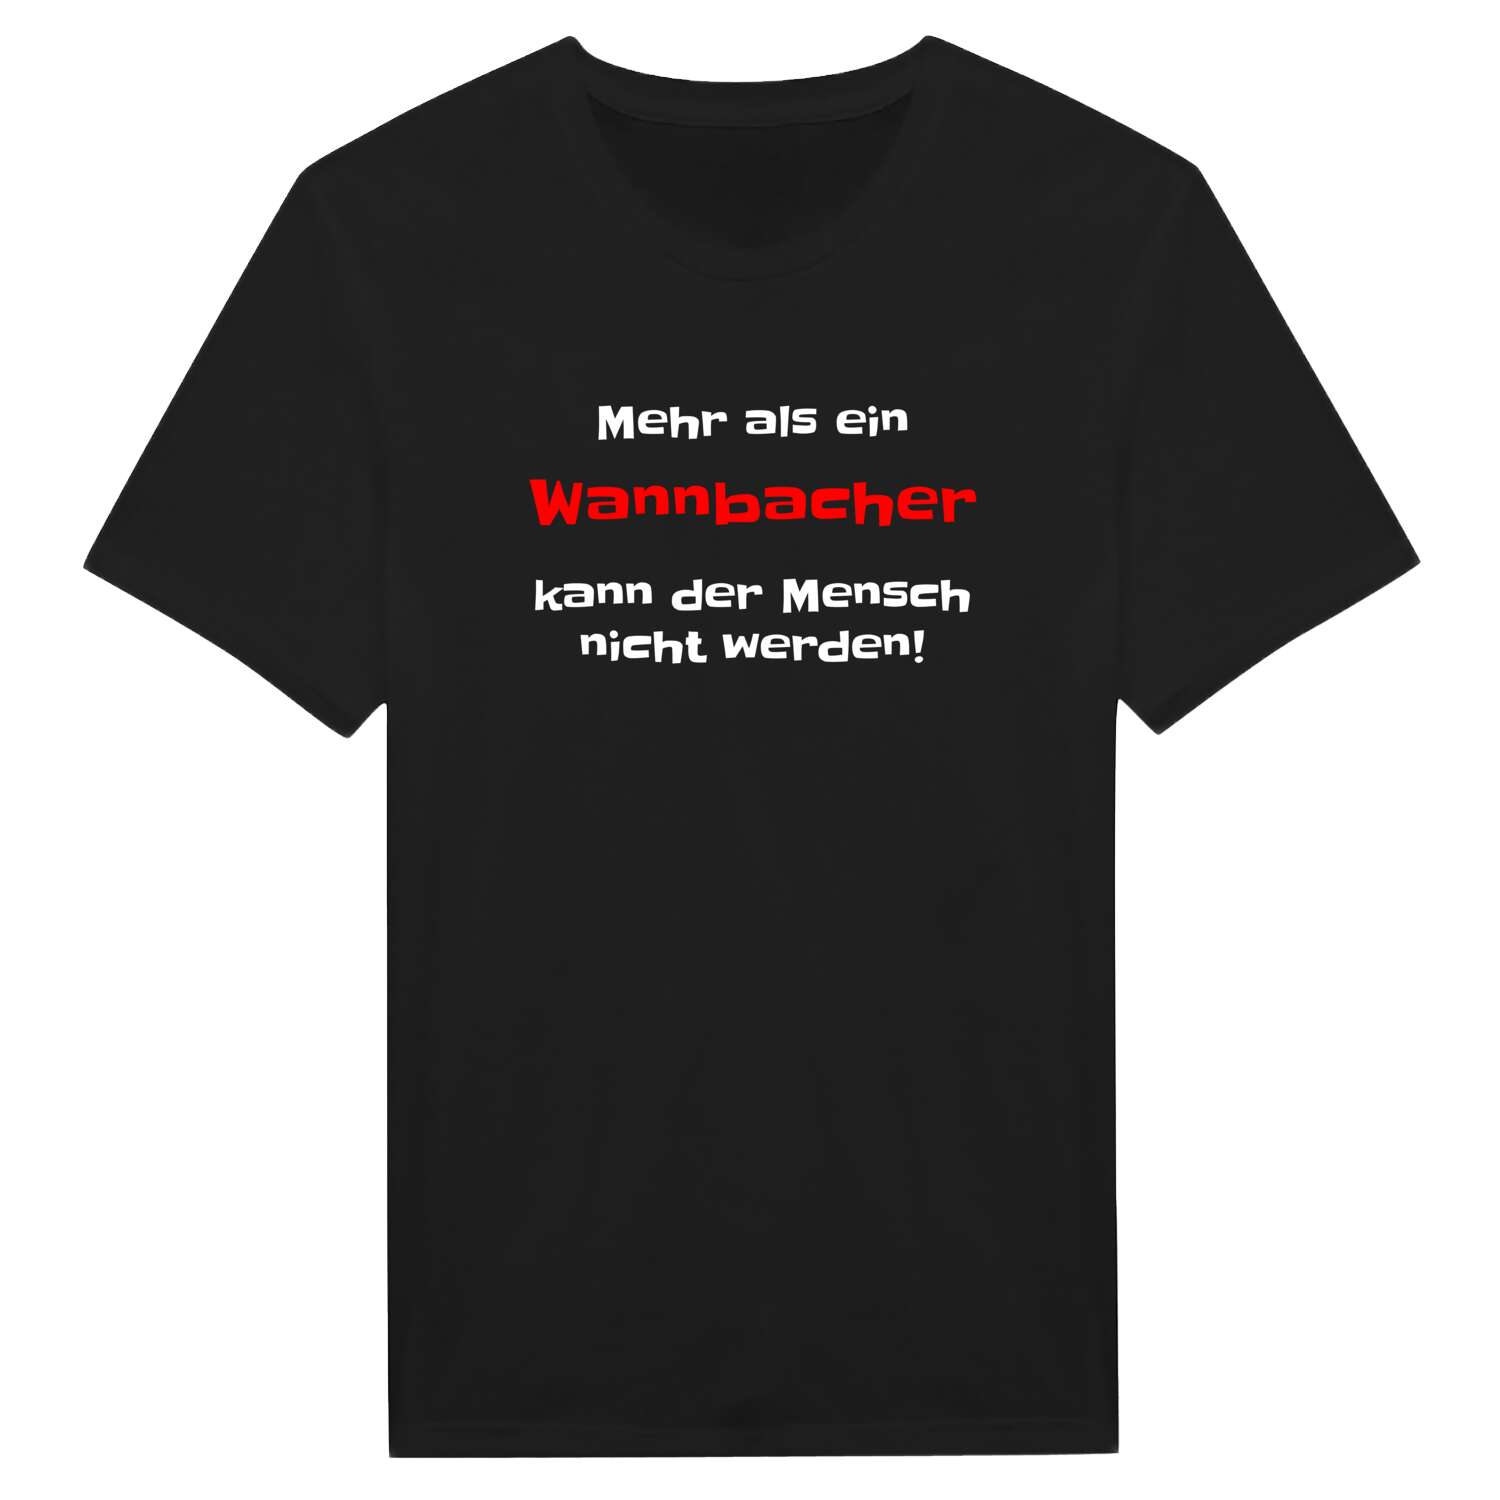 Wannbach T-Shirt »Mehr als ein«